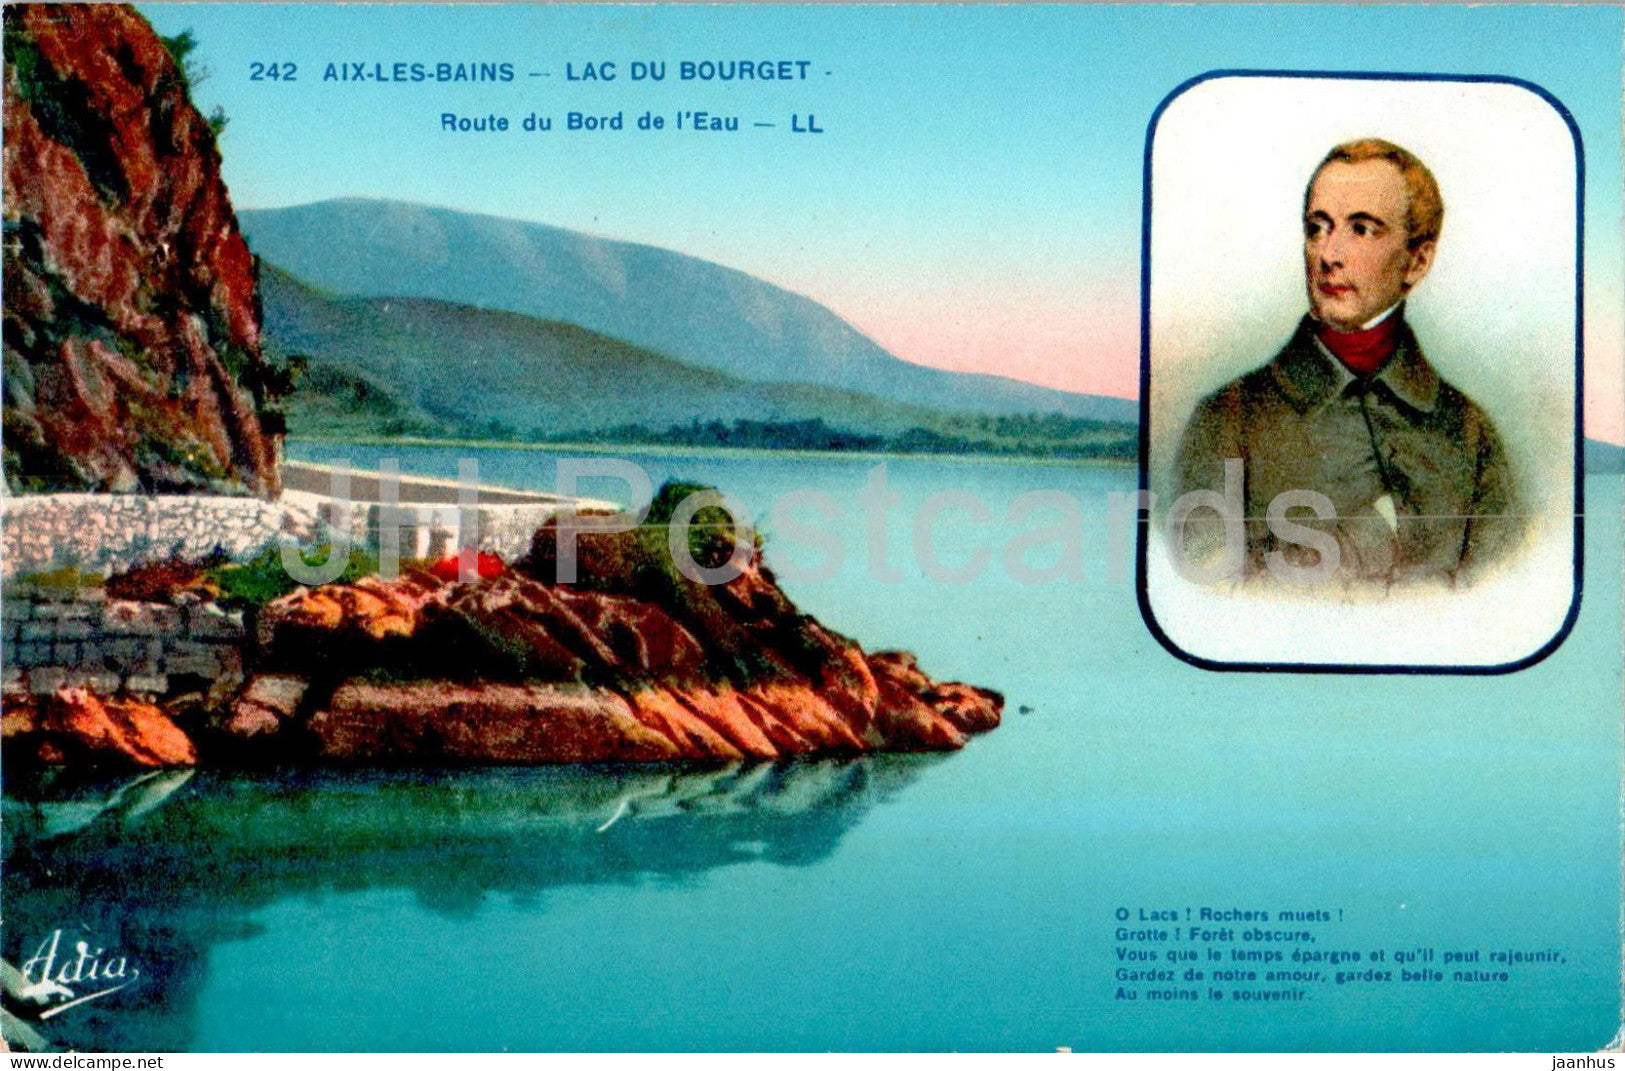 Aix Les Bains - Lac du Bourget - Route du Bord de l'Eau - 242 - old postcard - France - unused - JH Postcards